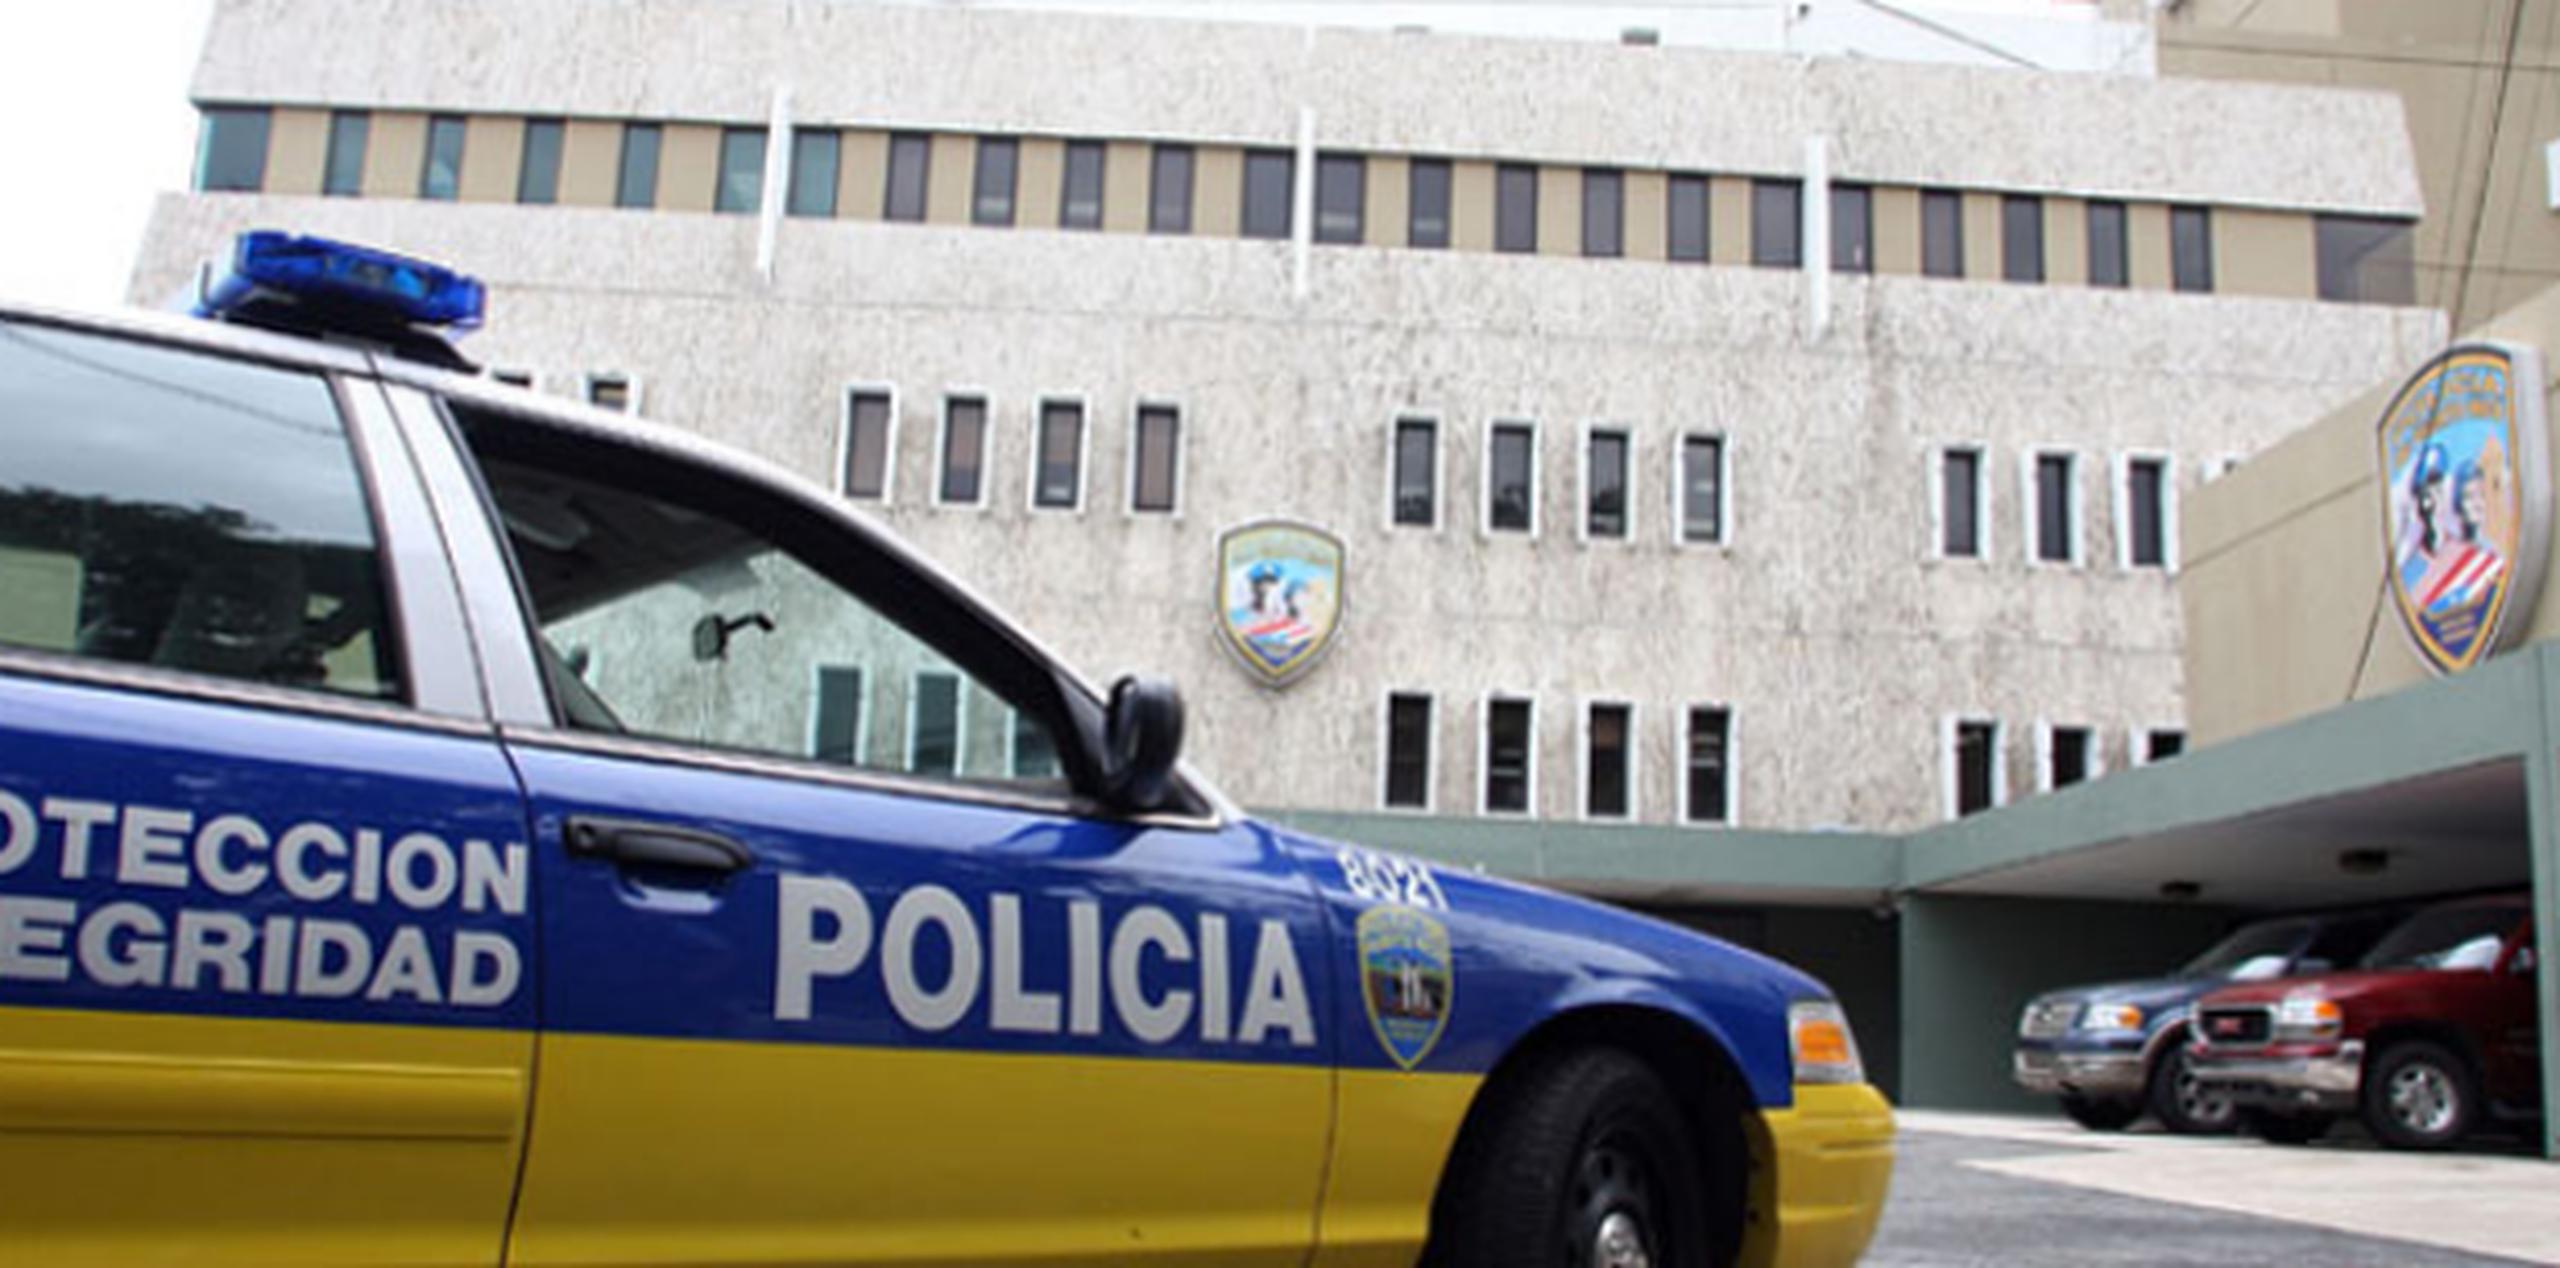 Pizarro Calderón, vecino del sector Miñi Miñi, también en Loíza, no aparece con récord delictivo en el sistema de la Policía. (Archivo)